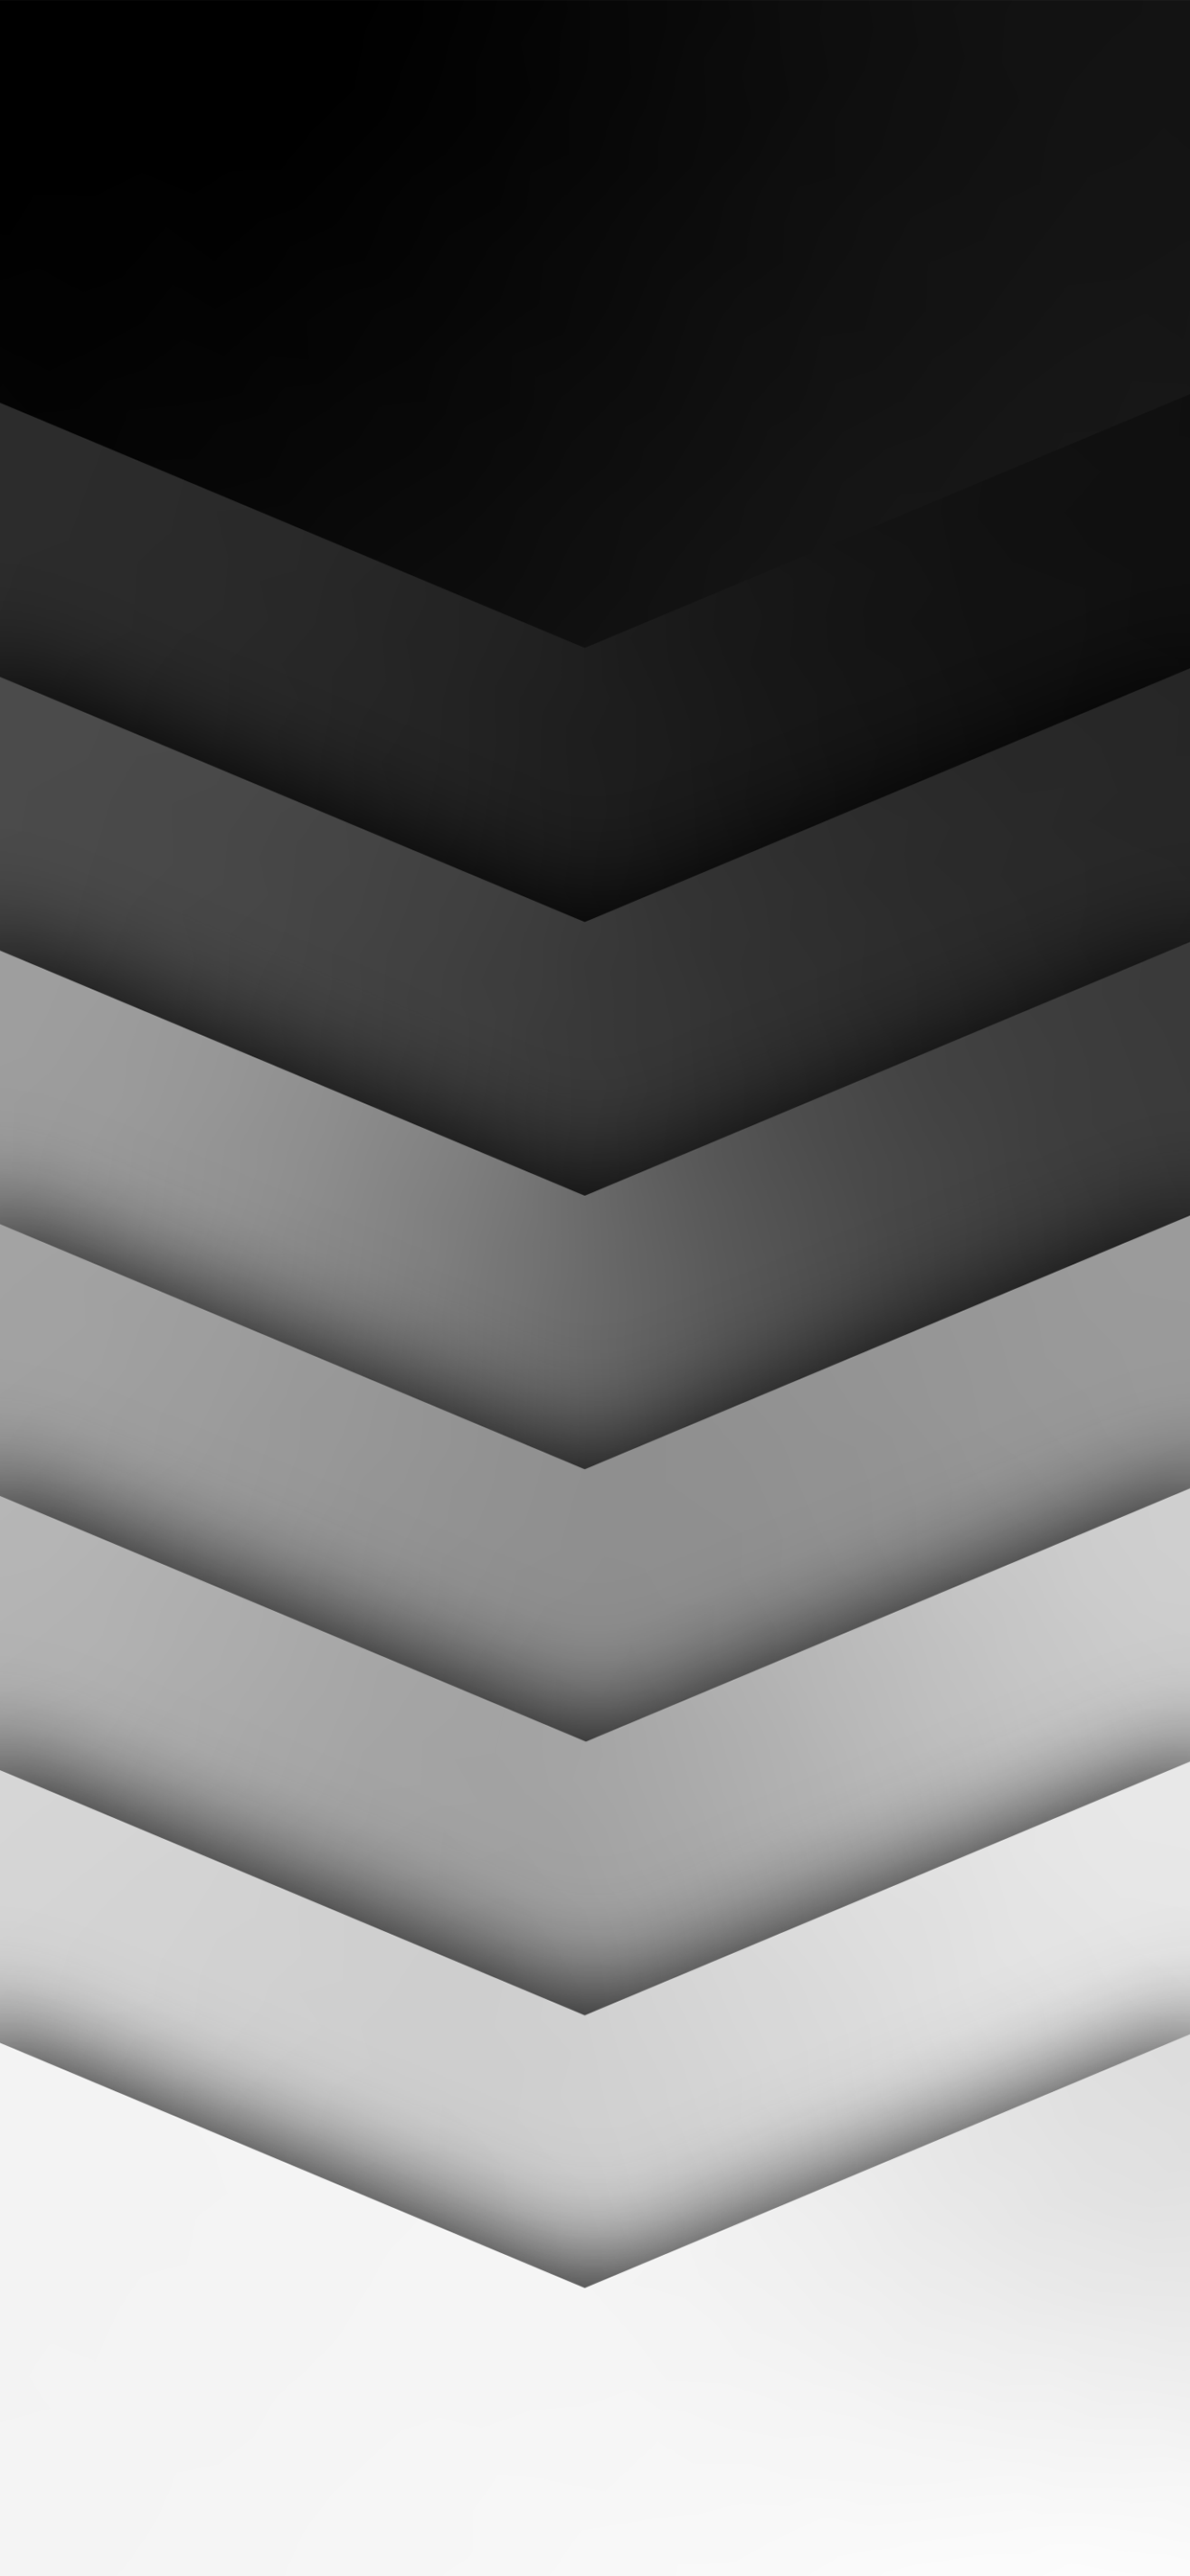 تصویر 3D جذاب سیاه و سفید برای زمینه گوشی آیفون